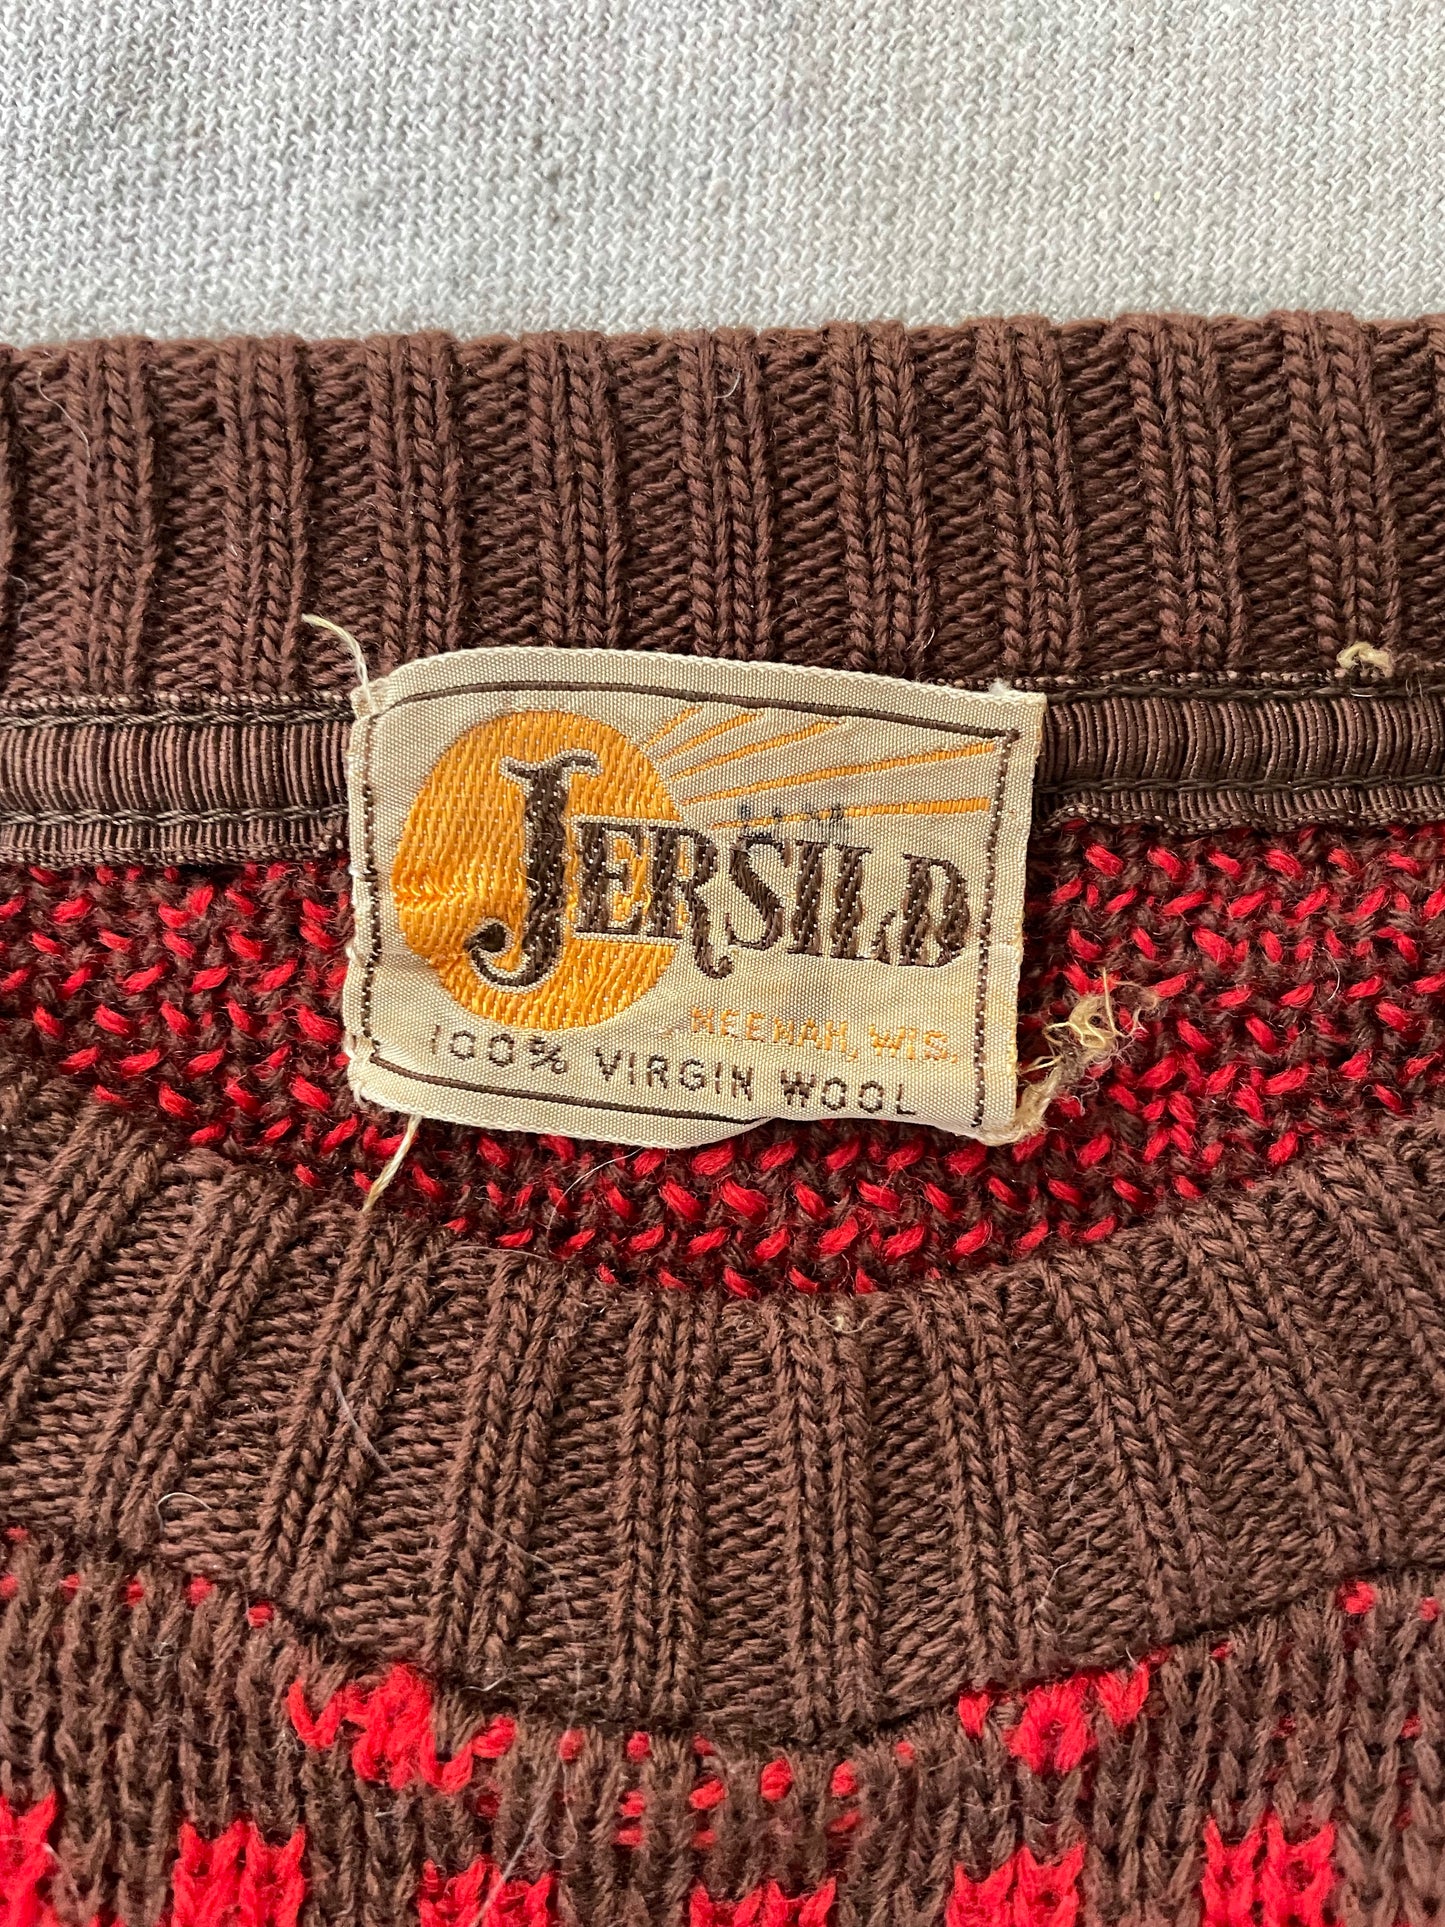 40s/50s Jersild Ski Sweater